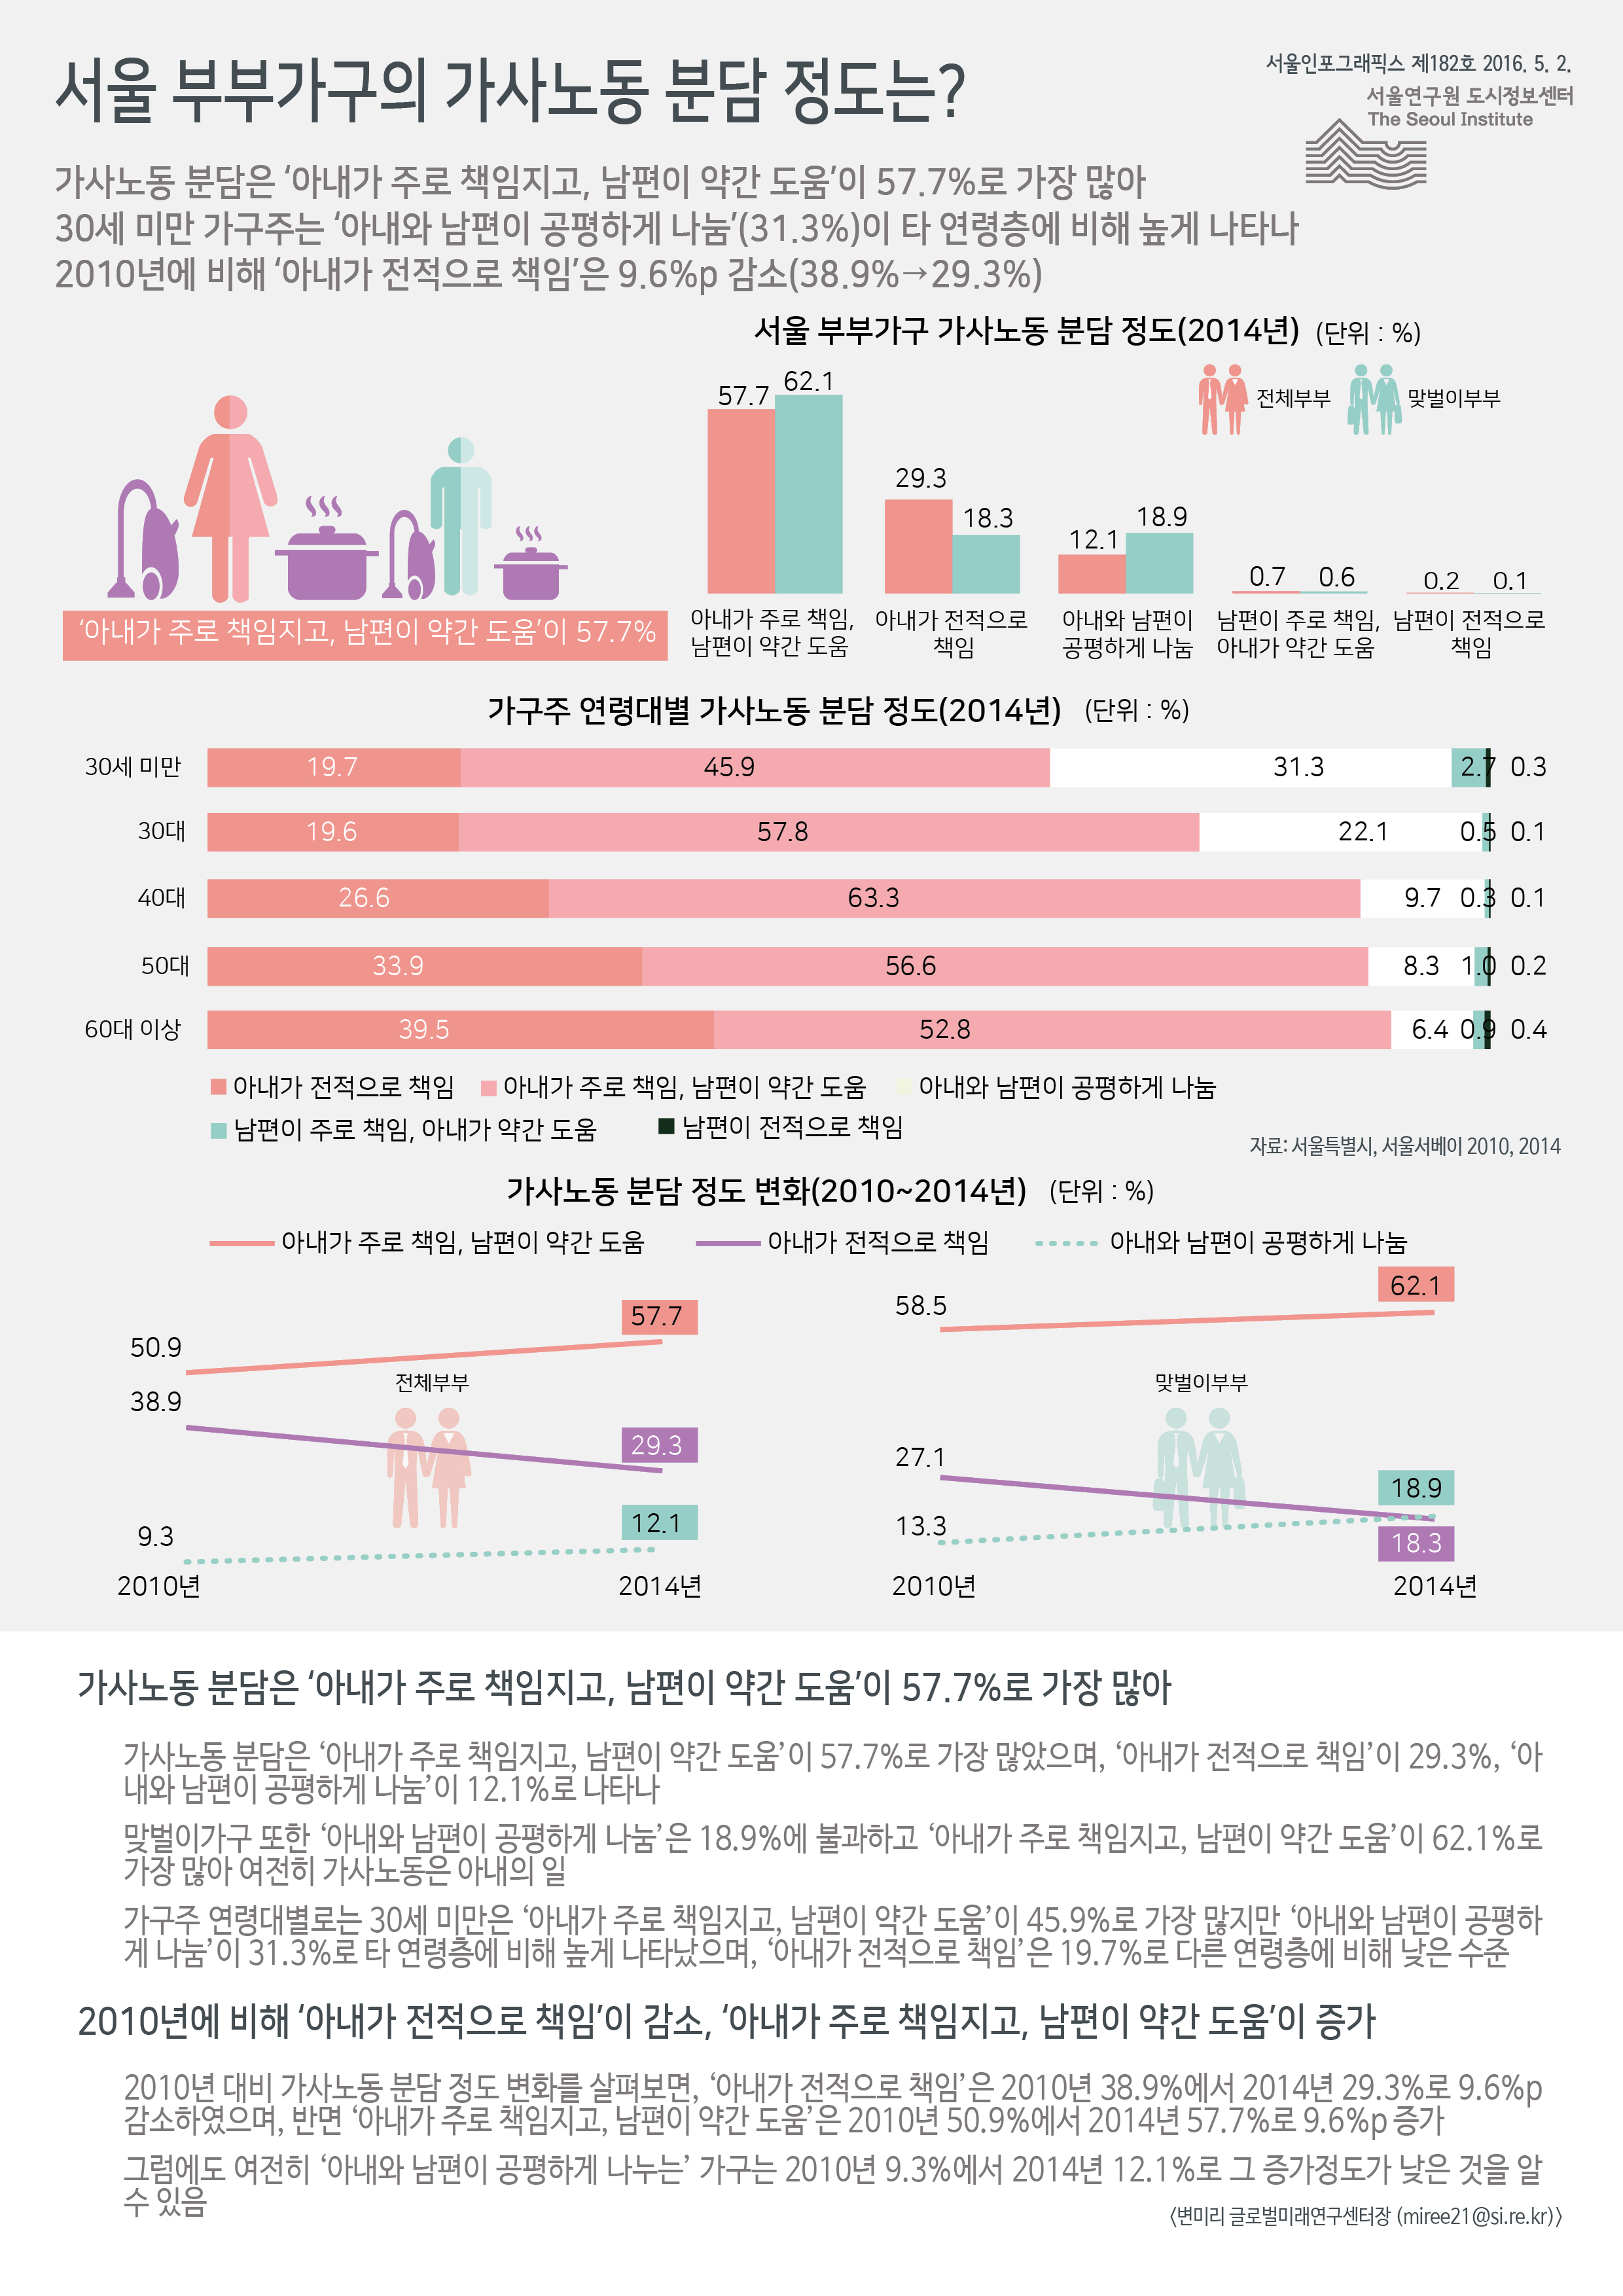 서울 부부가구의 가사노동 분담 정도는? 서울인포그래픽스 제182호 2016년 5월 2일 가사노동 분담은 ‘아내가 주로 책임지고, 남편이 약간 도움’이 57.7%로 가장 많음. 30세 미만 가구주는 ‘아내와 남편이 공평하게 나눔’이 31.3%로 타 연령층에 비해 높게 나타남. 2010년에 비해 ‘아내가 전적으로 책임’은 38.9%에서 29.3%로 9.6%p 감소함으로 정리될 수 있습니다. 인포그래픽으로 제공되는 그래픽은 하단에 표로 자세히 제공됩니다.